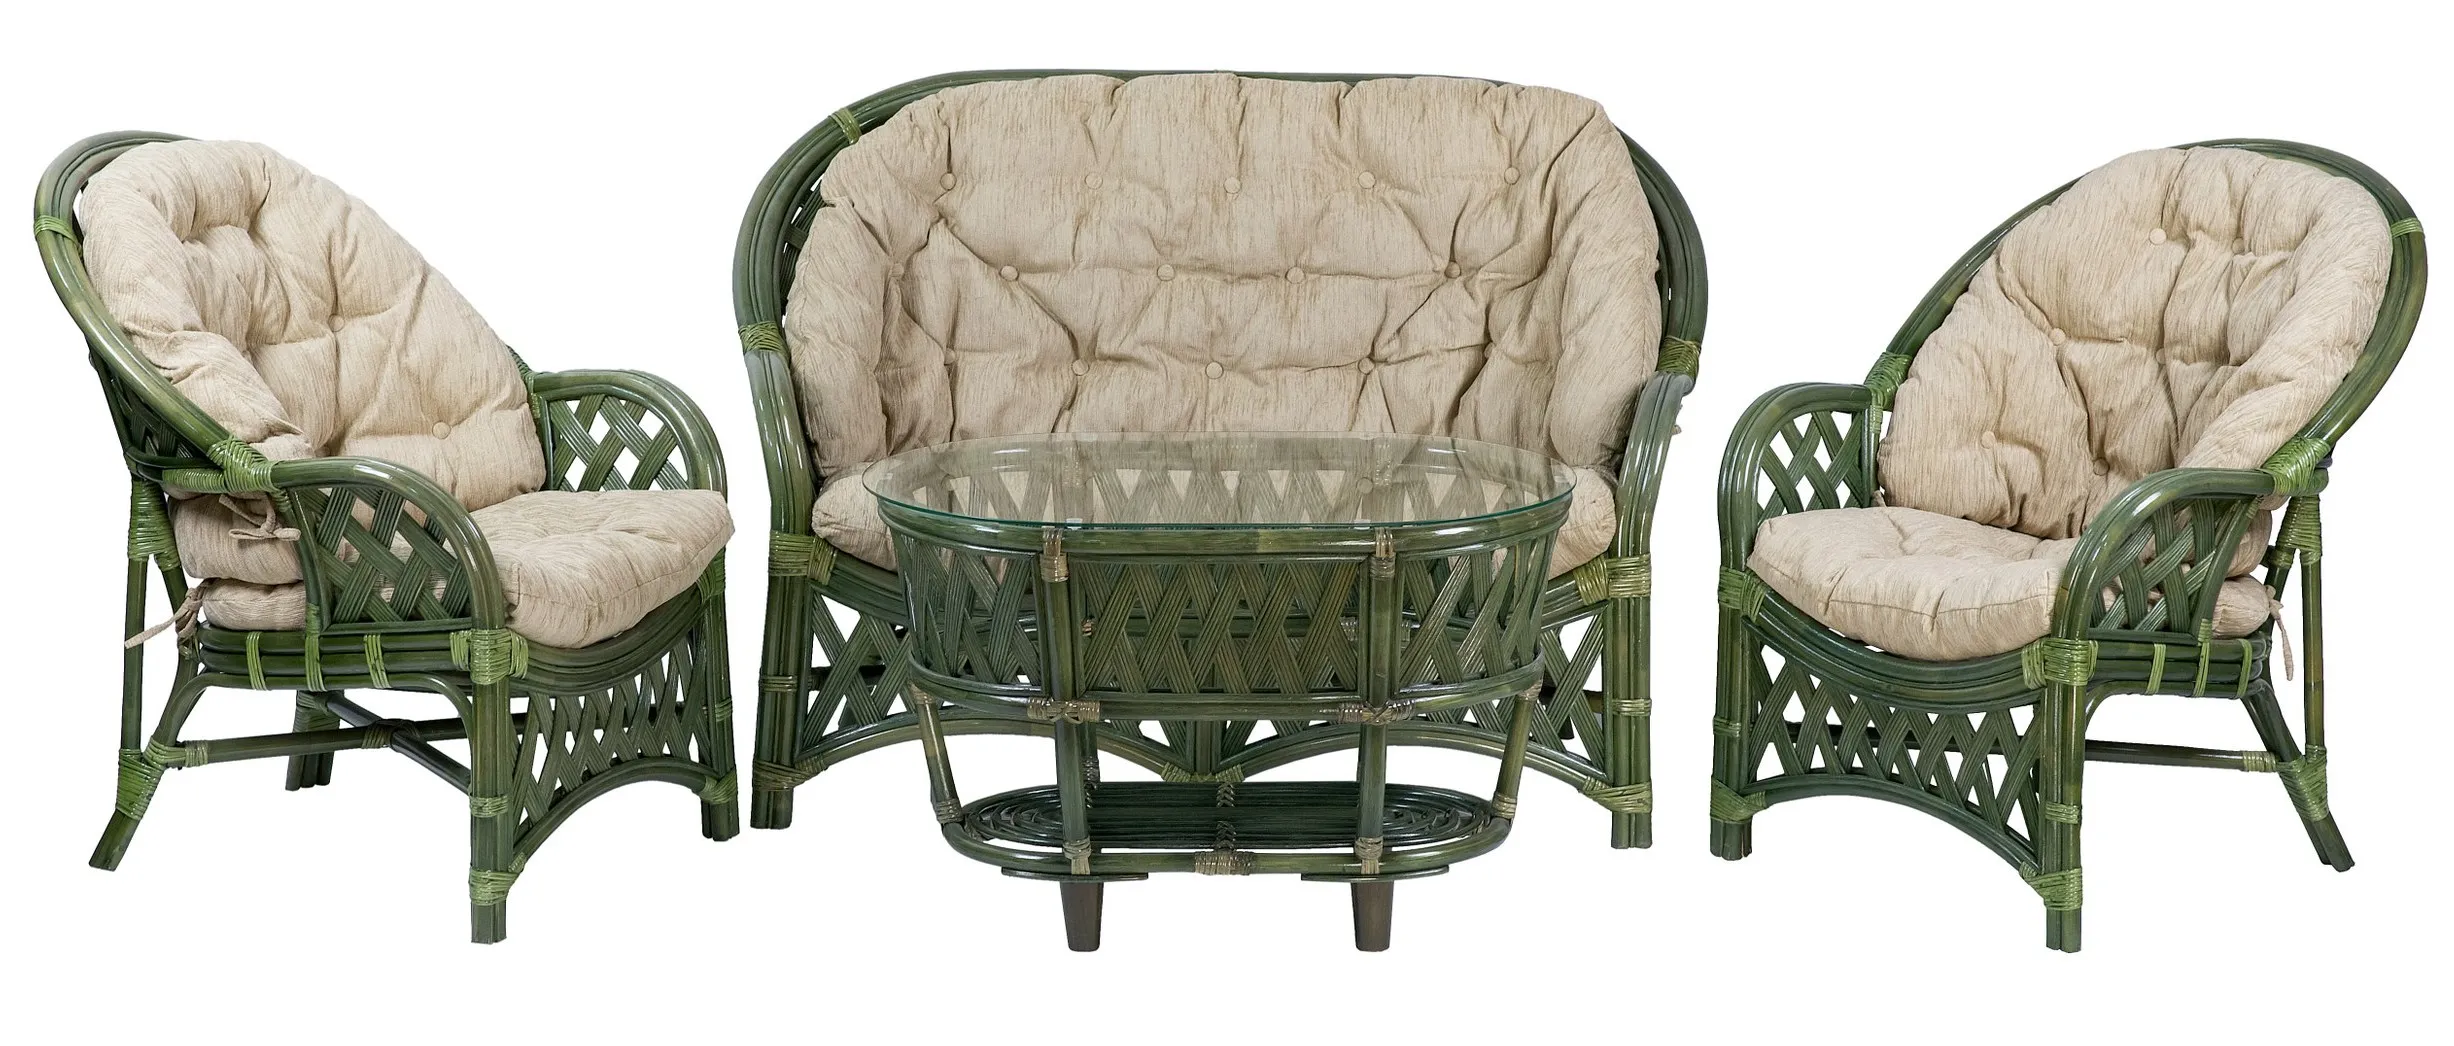 Комплект мебели из ротанга Черчилль (Рузвельт) с 2-х местным диваном и овальным столом олива